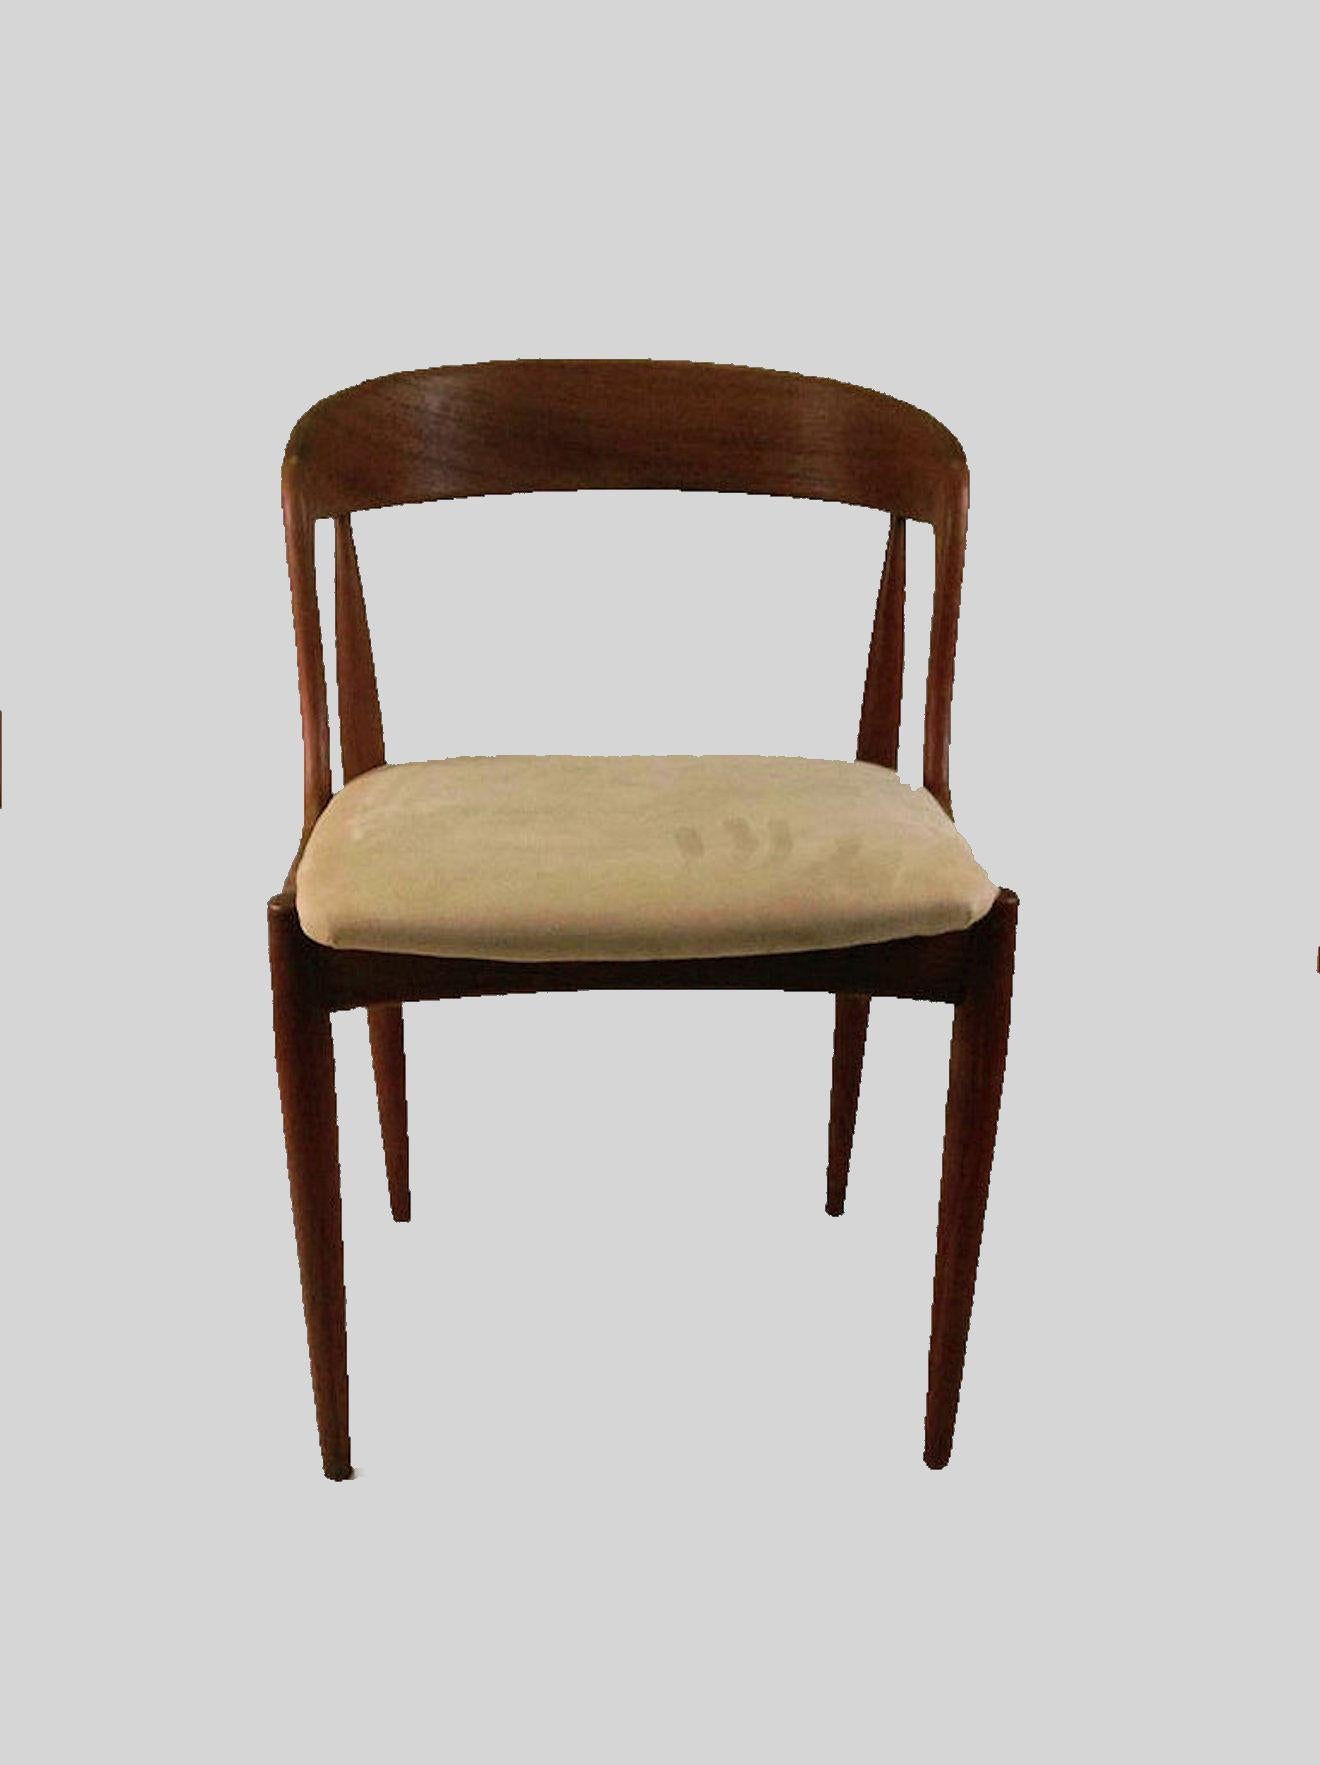 Ensemble de six chaises de salle à manger Johannes Andersen restaurées en teck, conçues pour Ørum Møbelfabrik en 1965.

Les chaises ont été conçues en 19Set of six elegant organic shape dining chairs in teak designed by the Danish designer Johannes